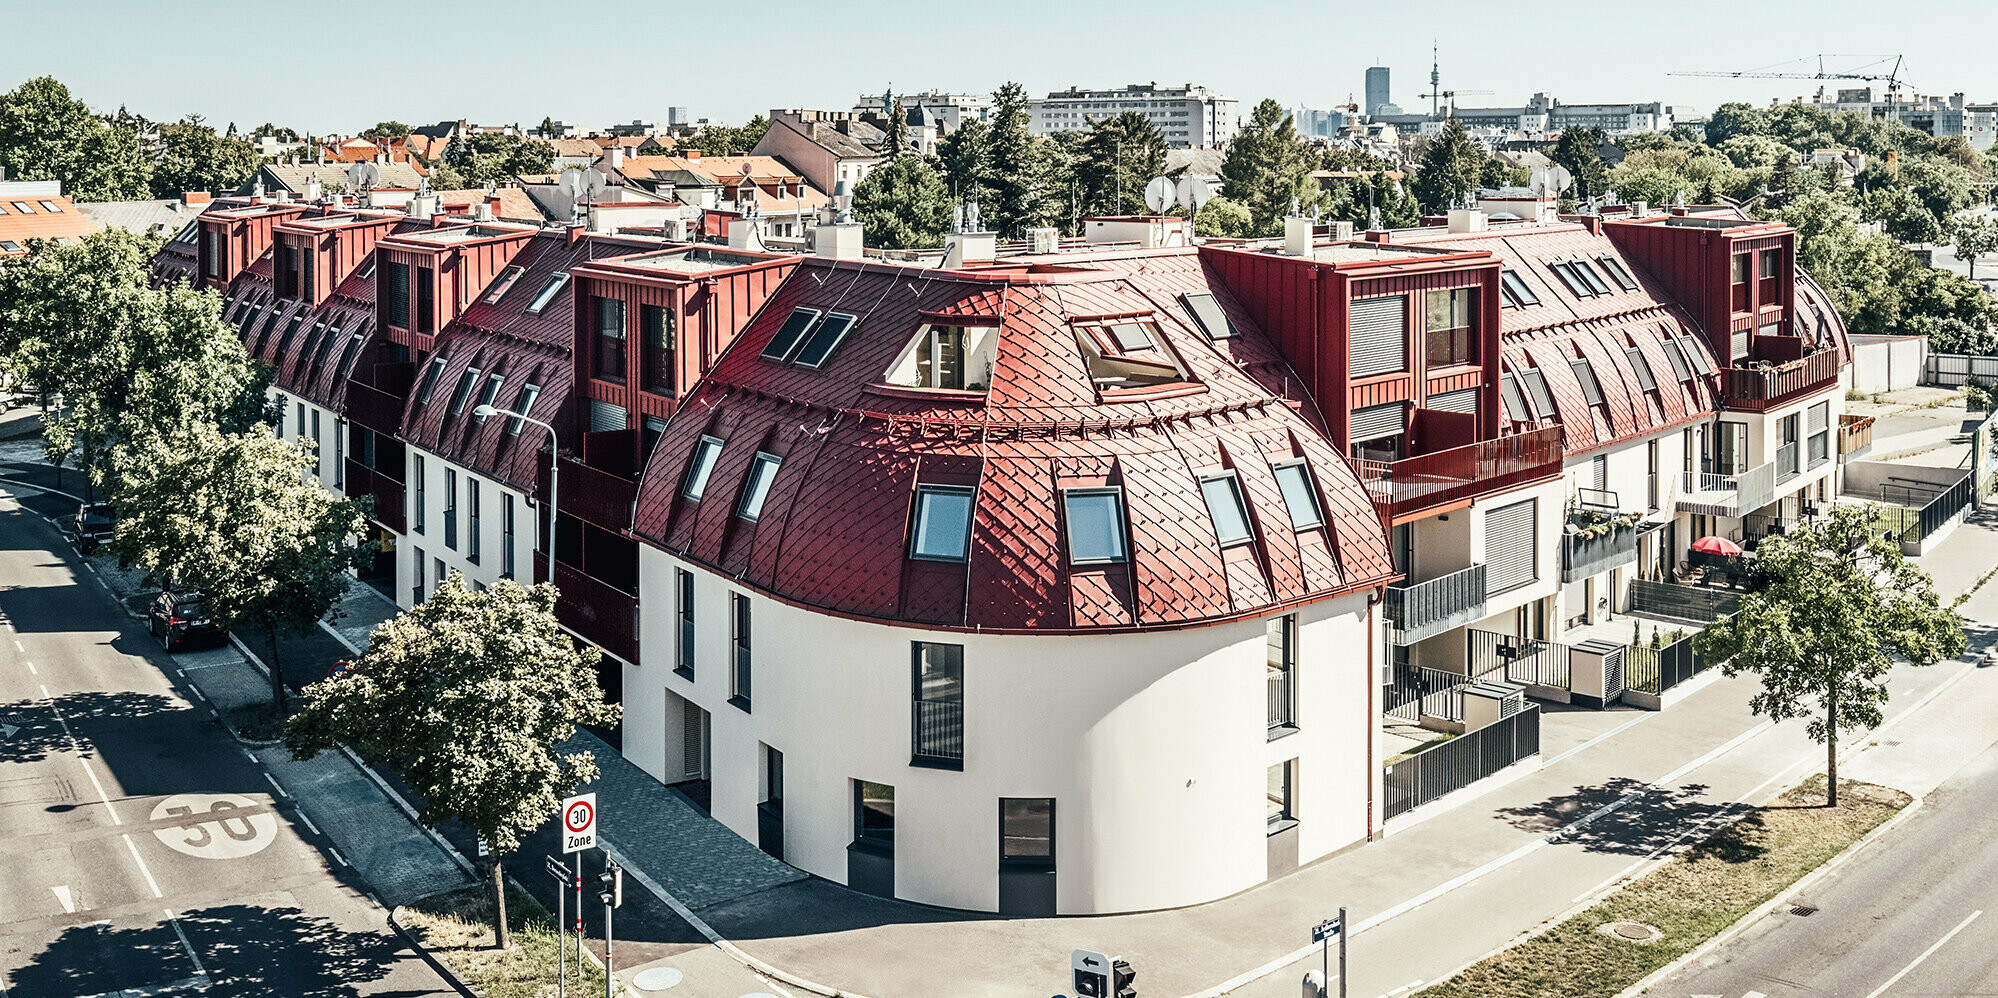 Pohled z ulice na rezidenční komplex Schöneck se zaoblenou střechou navrženou architekty schneider+schumacher